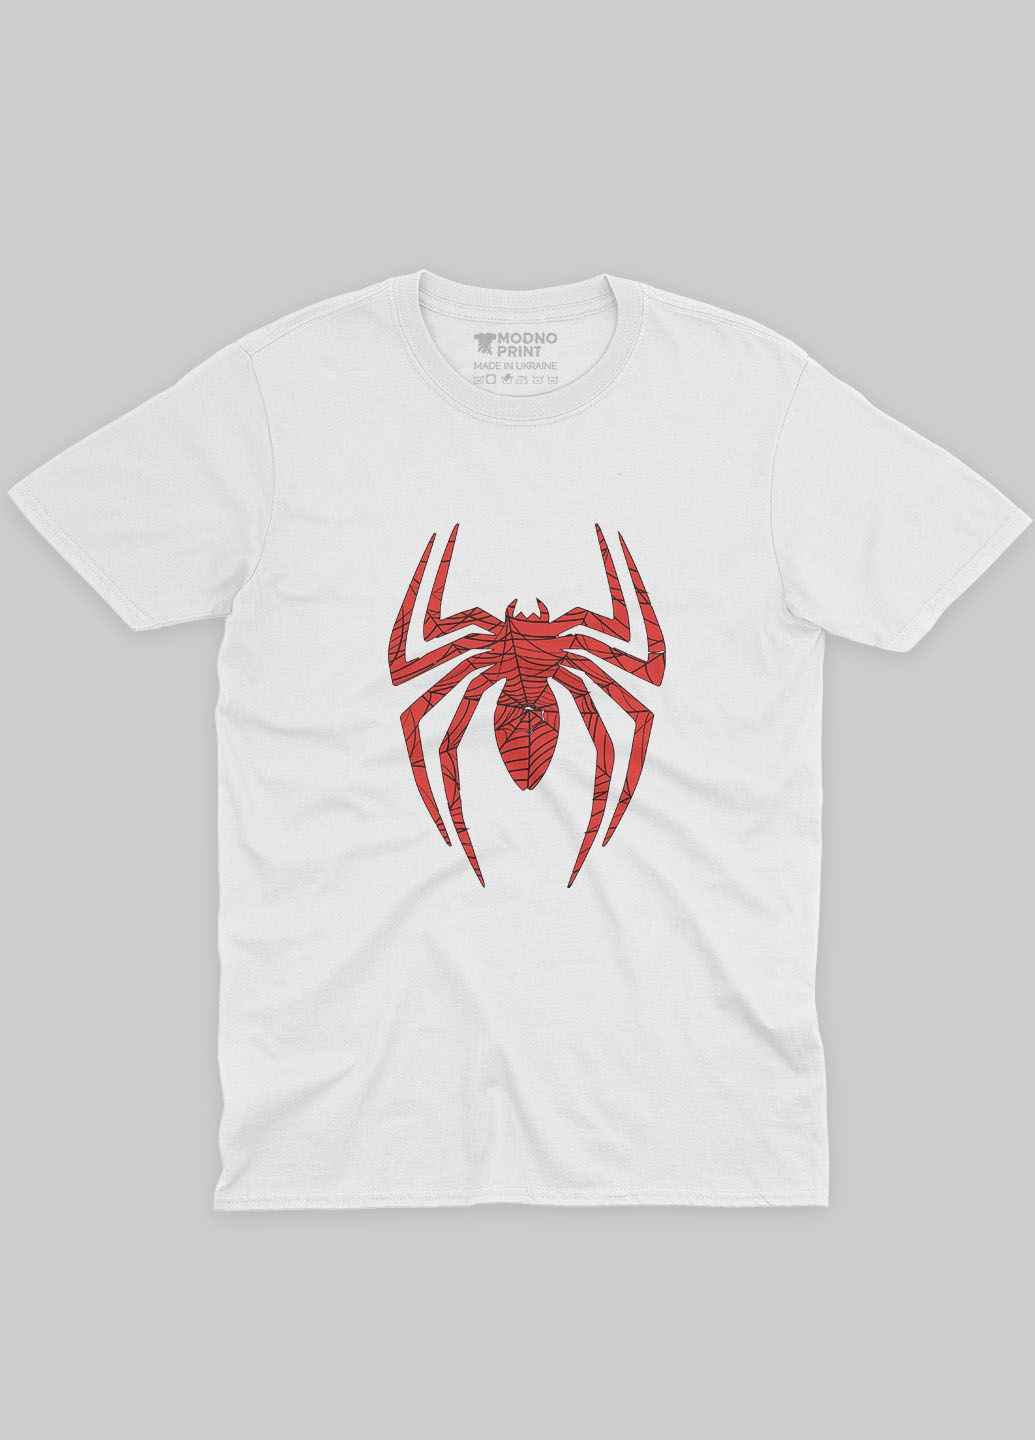 Біла демісезонна футболка для дівчинки з принтом супергероя - людина-павук (ts001-1-whi-006-014-029-g) Modno